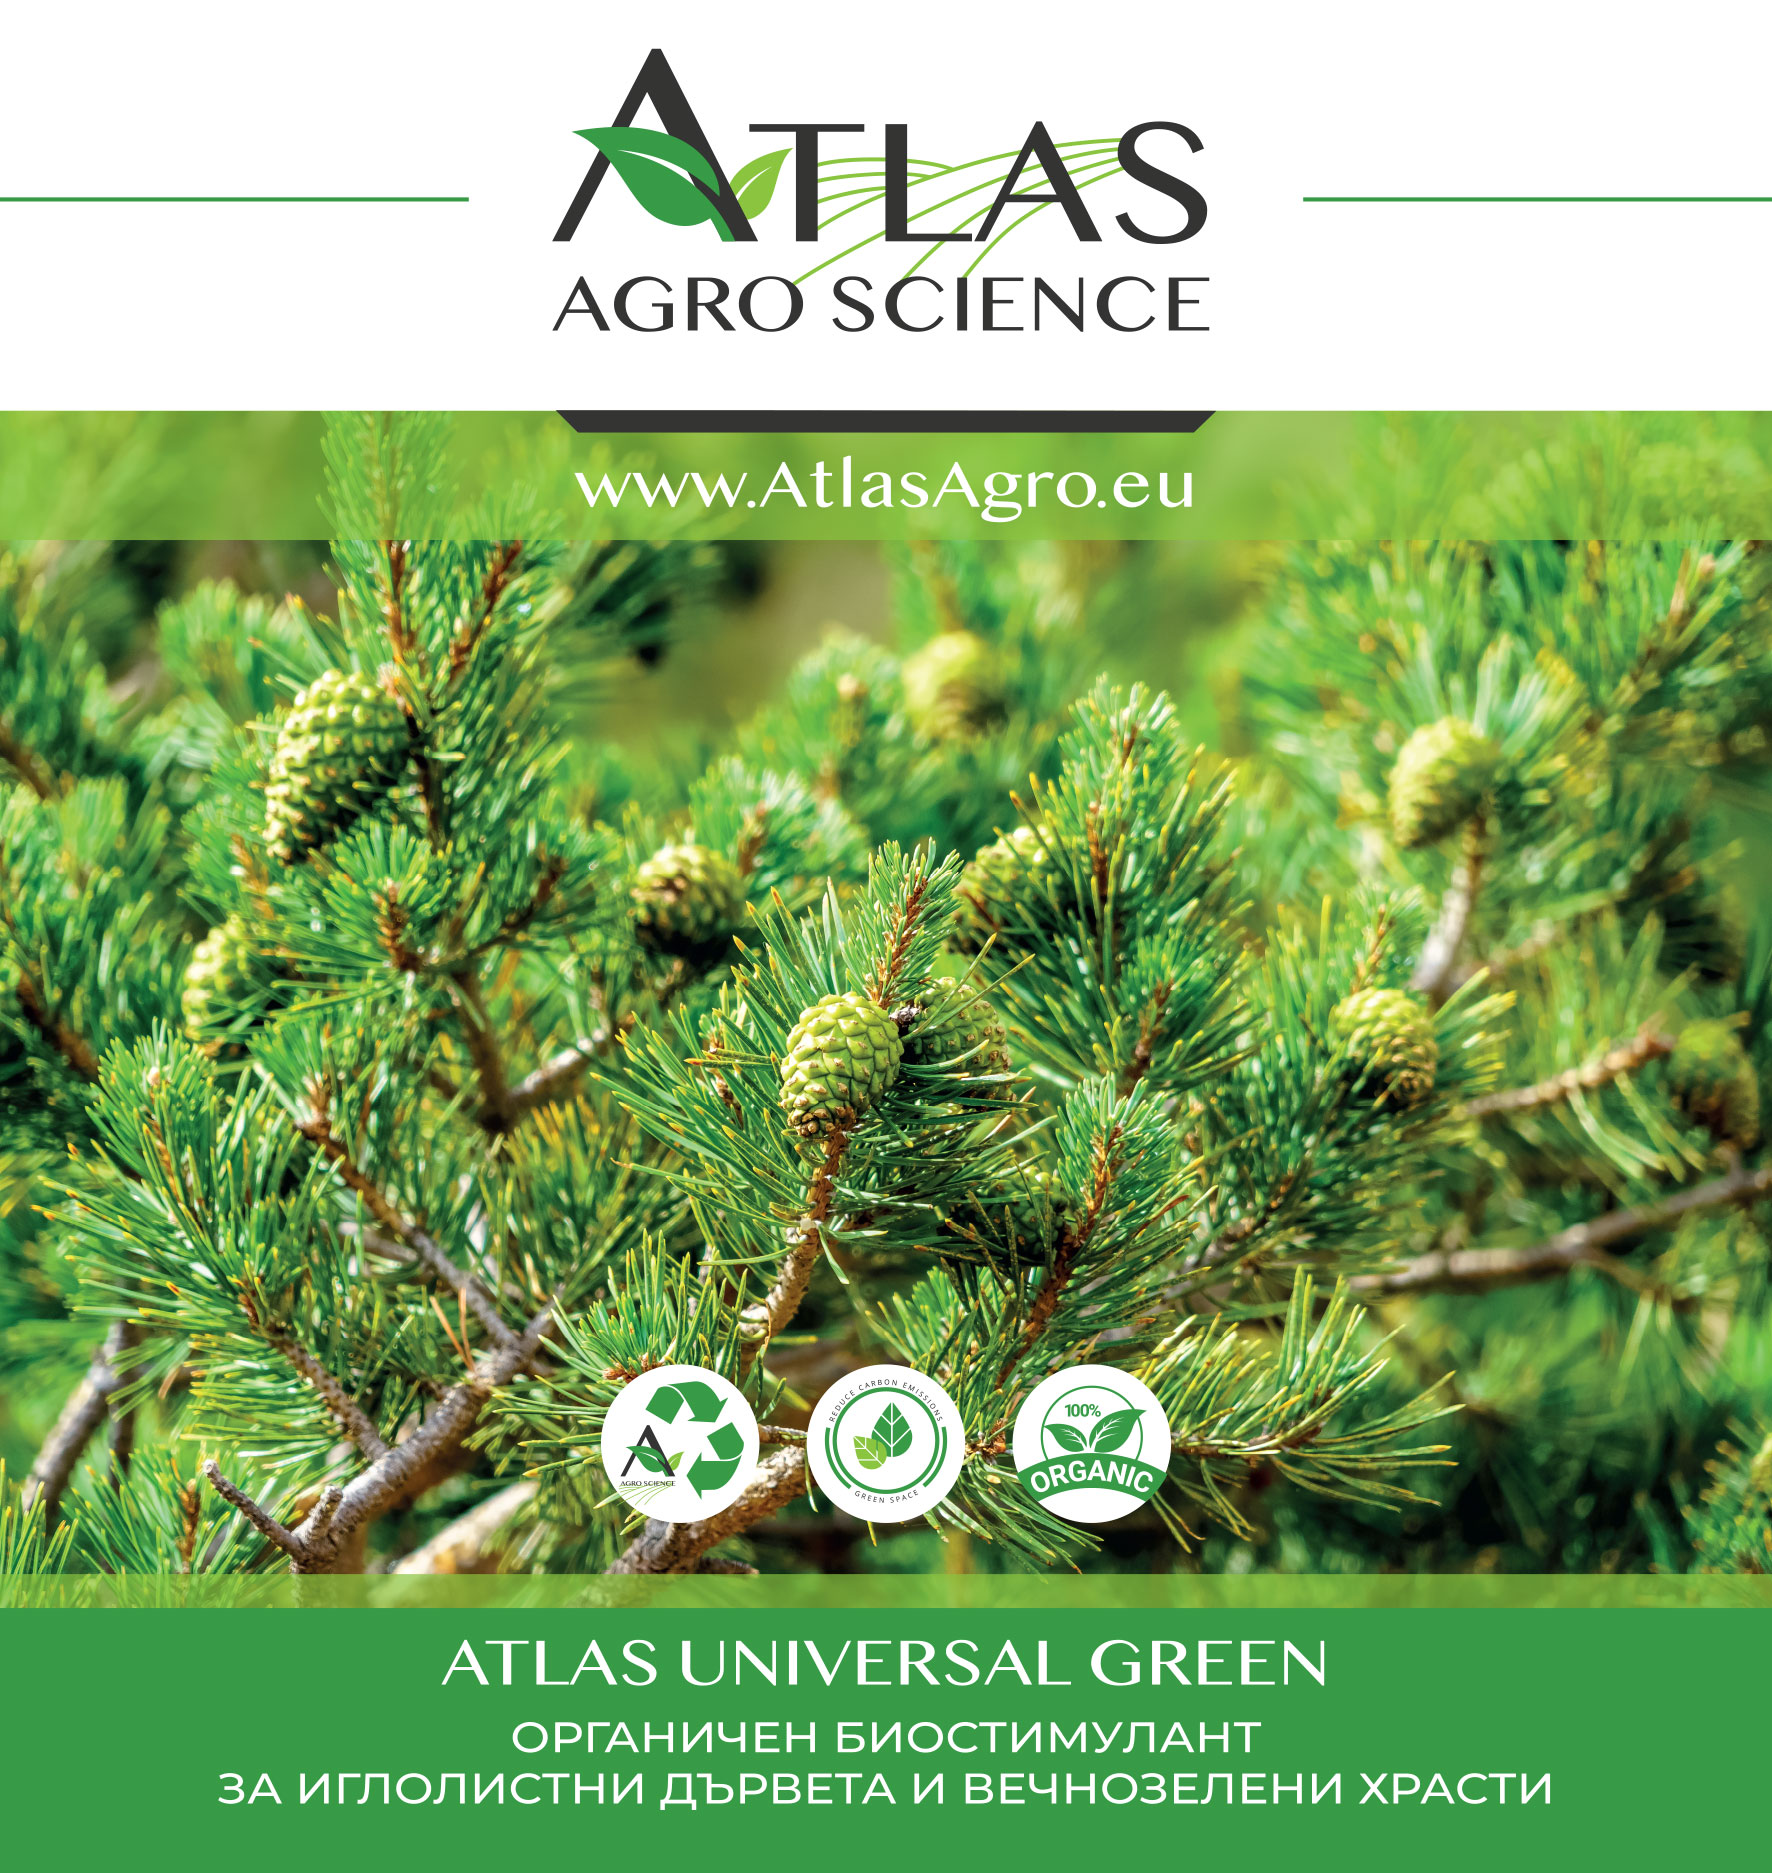 Атлас Агро-Сайънс подобрява устойчивостта в земеделието